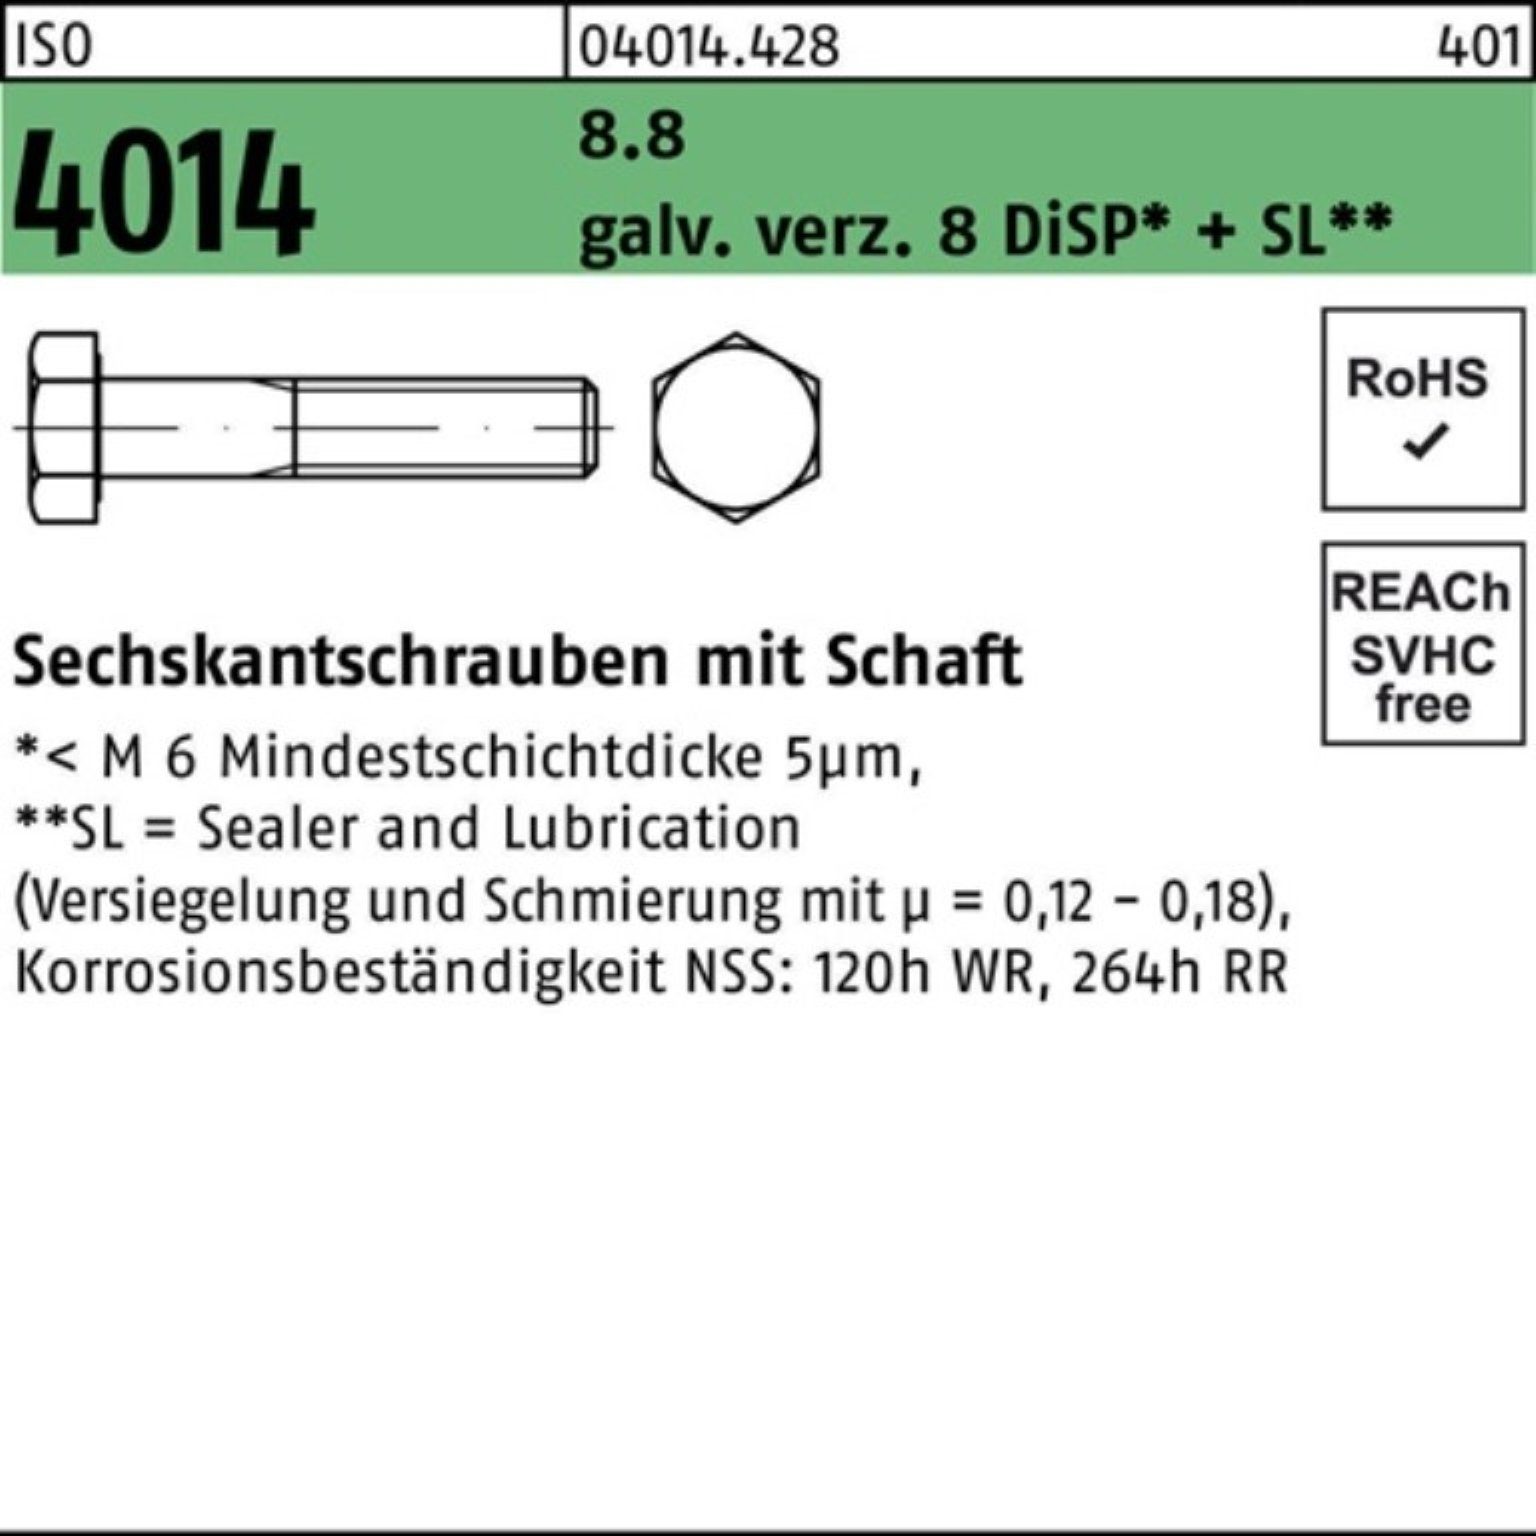 Bufab Sechskantschraube 100er 8 galv.verz. Sechskantschraube 4014 ISO 8.8 Pack Schaft M10x160